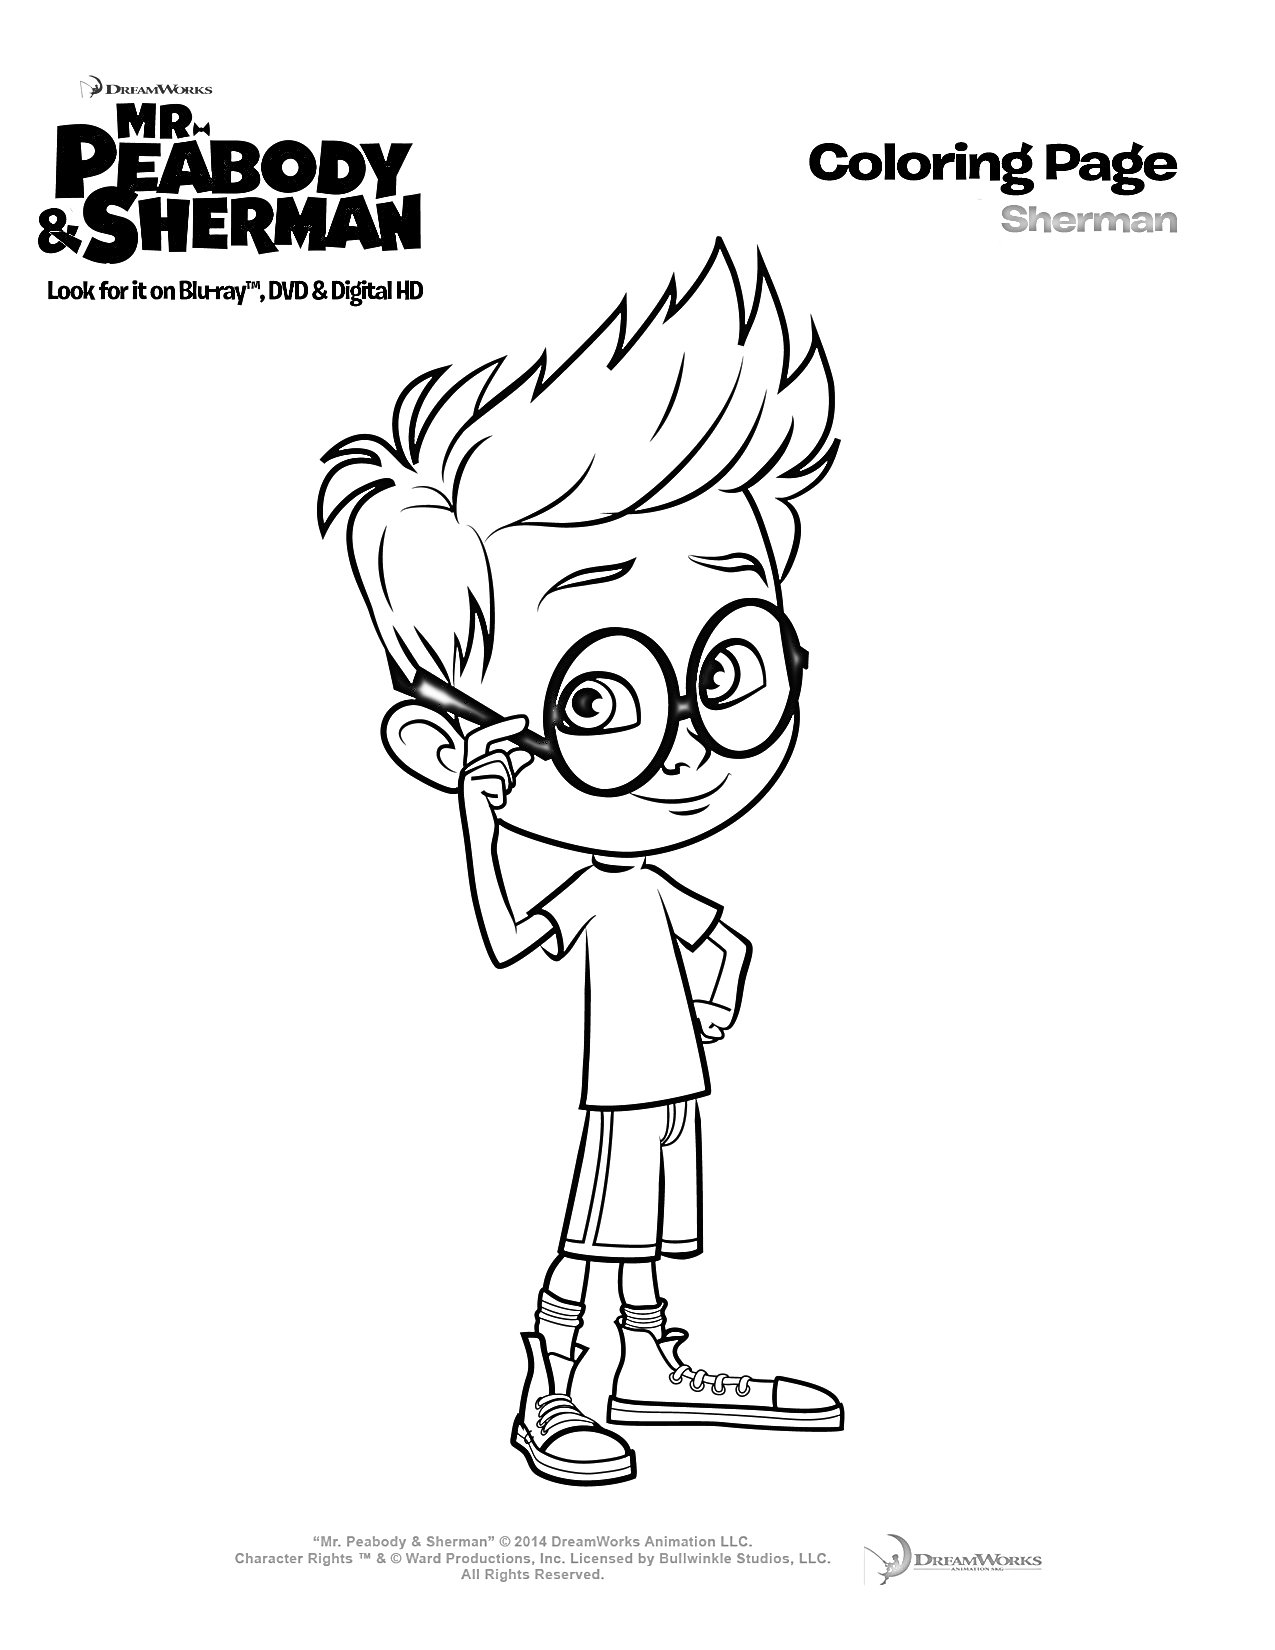 Раскраска Мистер Пибоди и Шерман - раскраска с Шерманом, мальчик в очках и кроссовках на одной ноге, стоит с поднятой рукой к щекам, надписи 